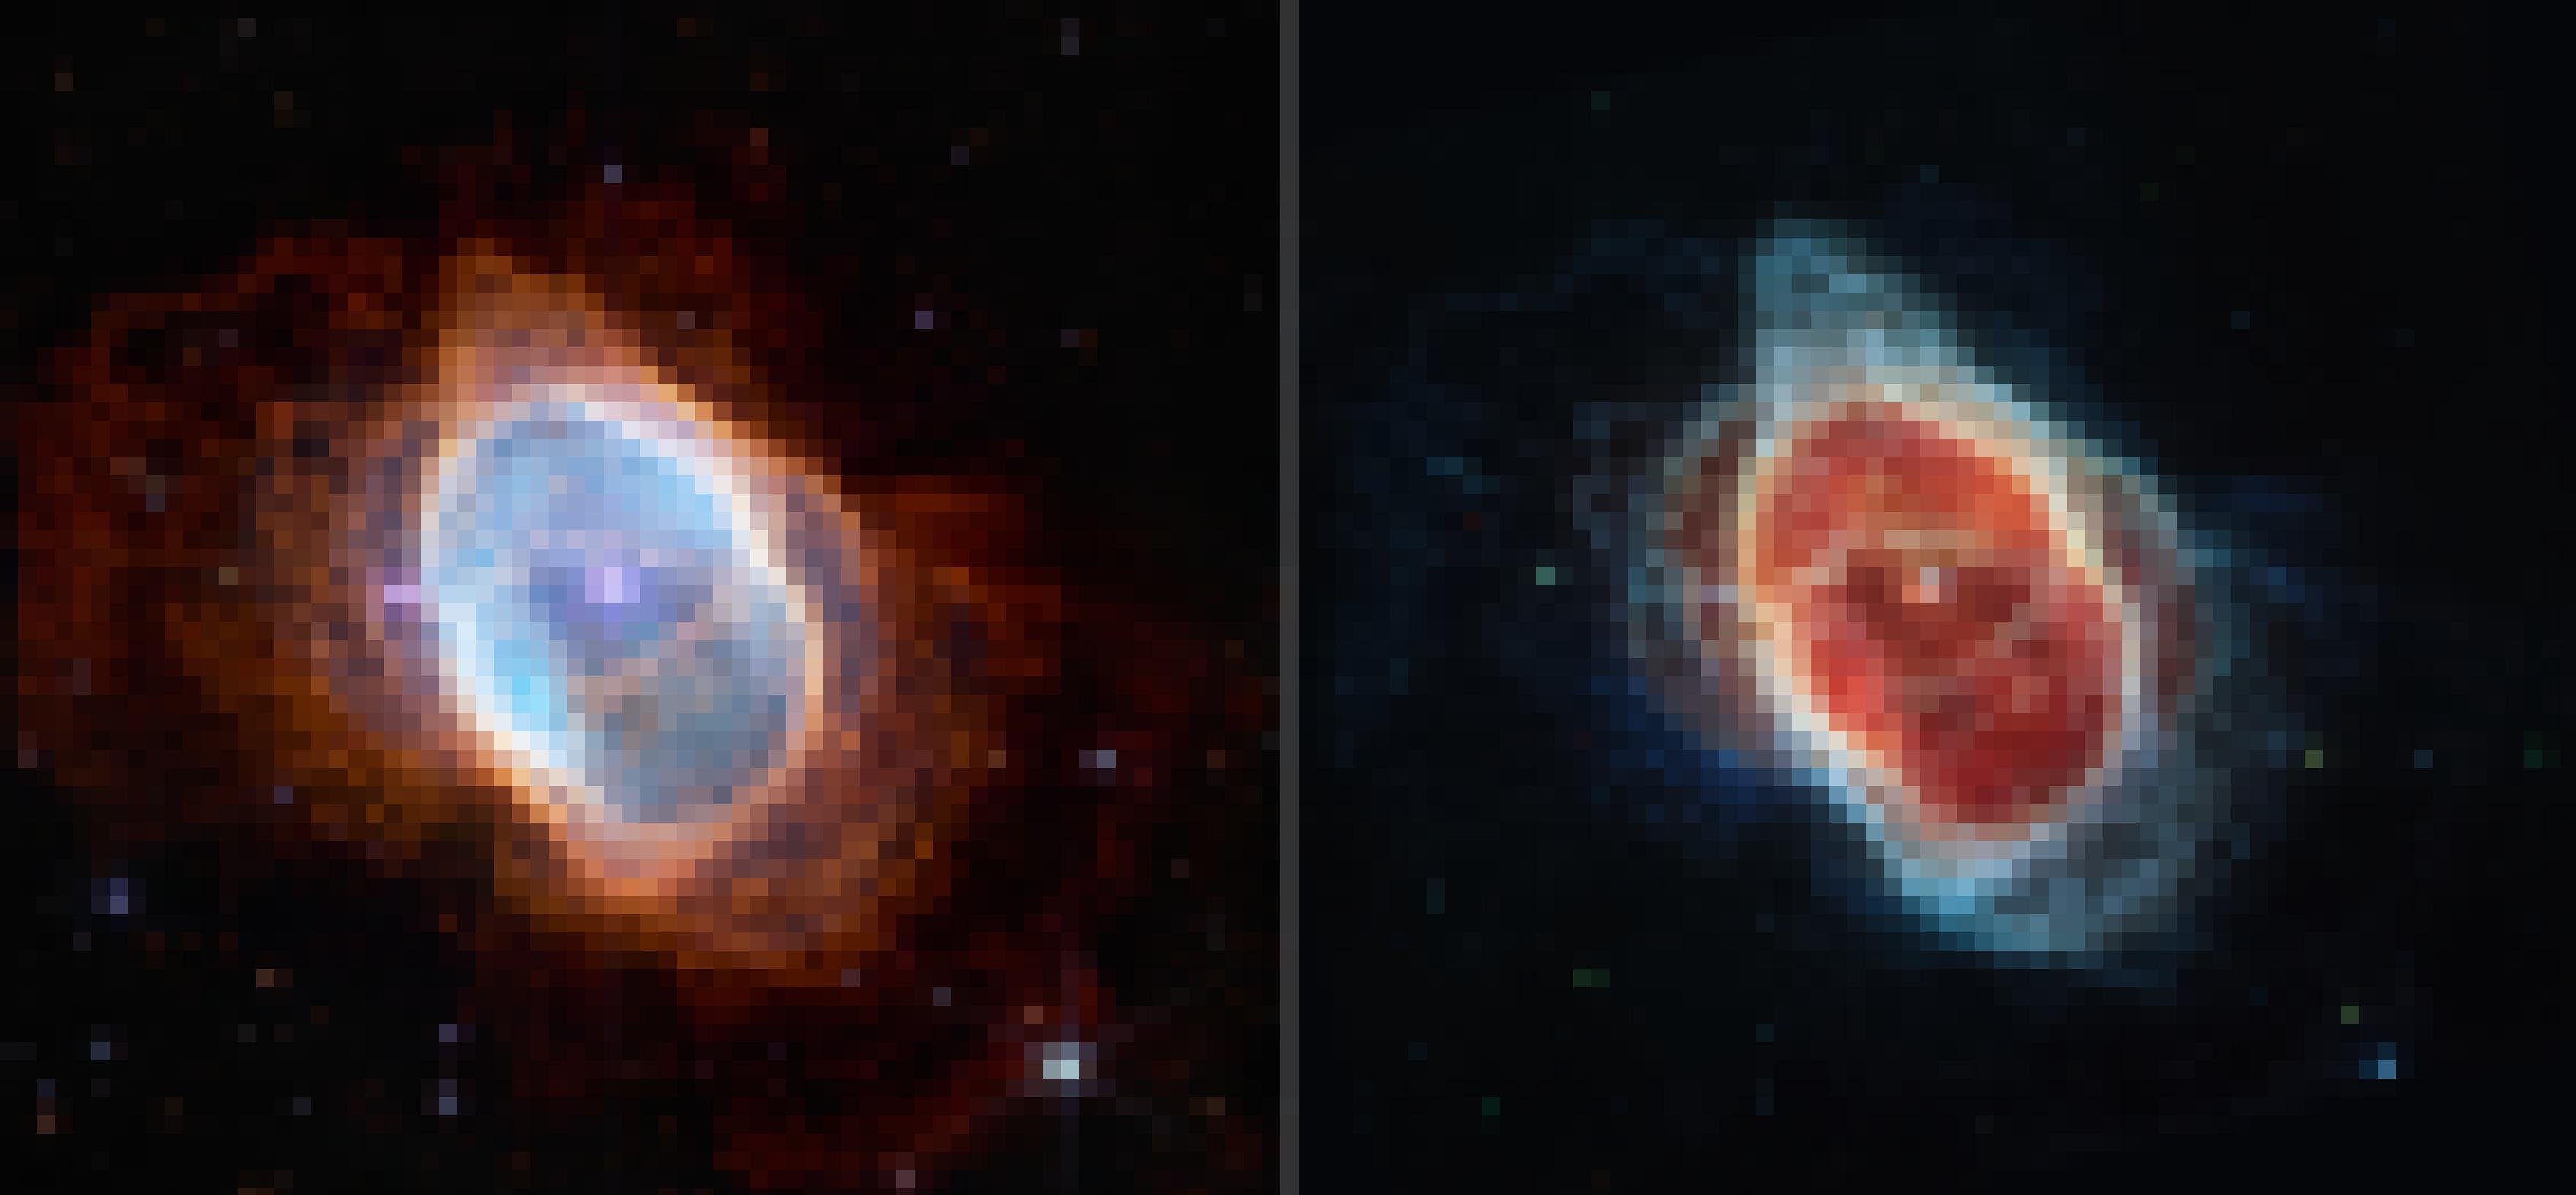 Links und rechts ist ein planerarischer Nebel zu sehen, der einen Zentralstern umgibt. Beide Bilder sind bei unterschiedlichen Wellenlängen im Infraroten aufgenommen und zeigen dasselbe Objekt.